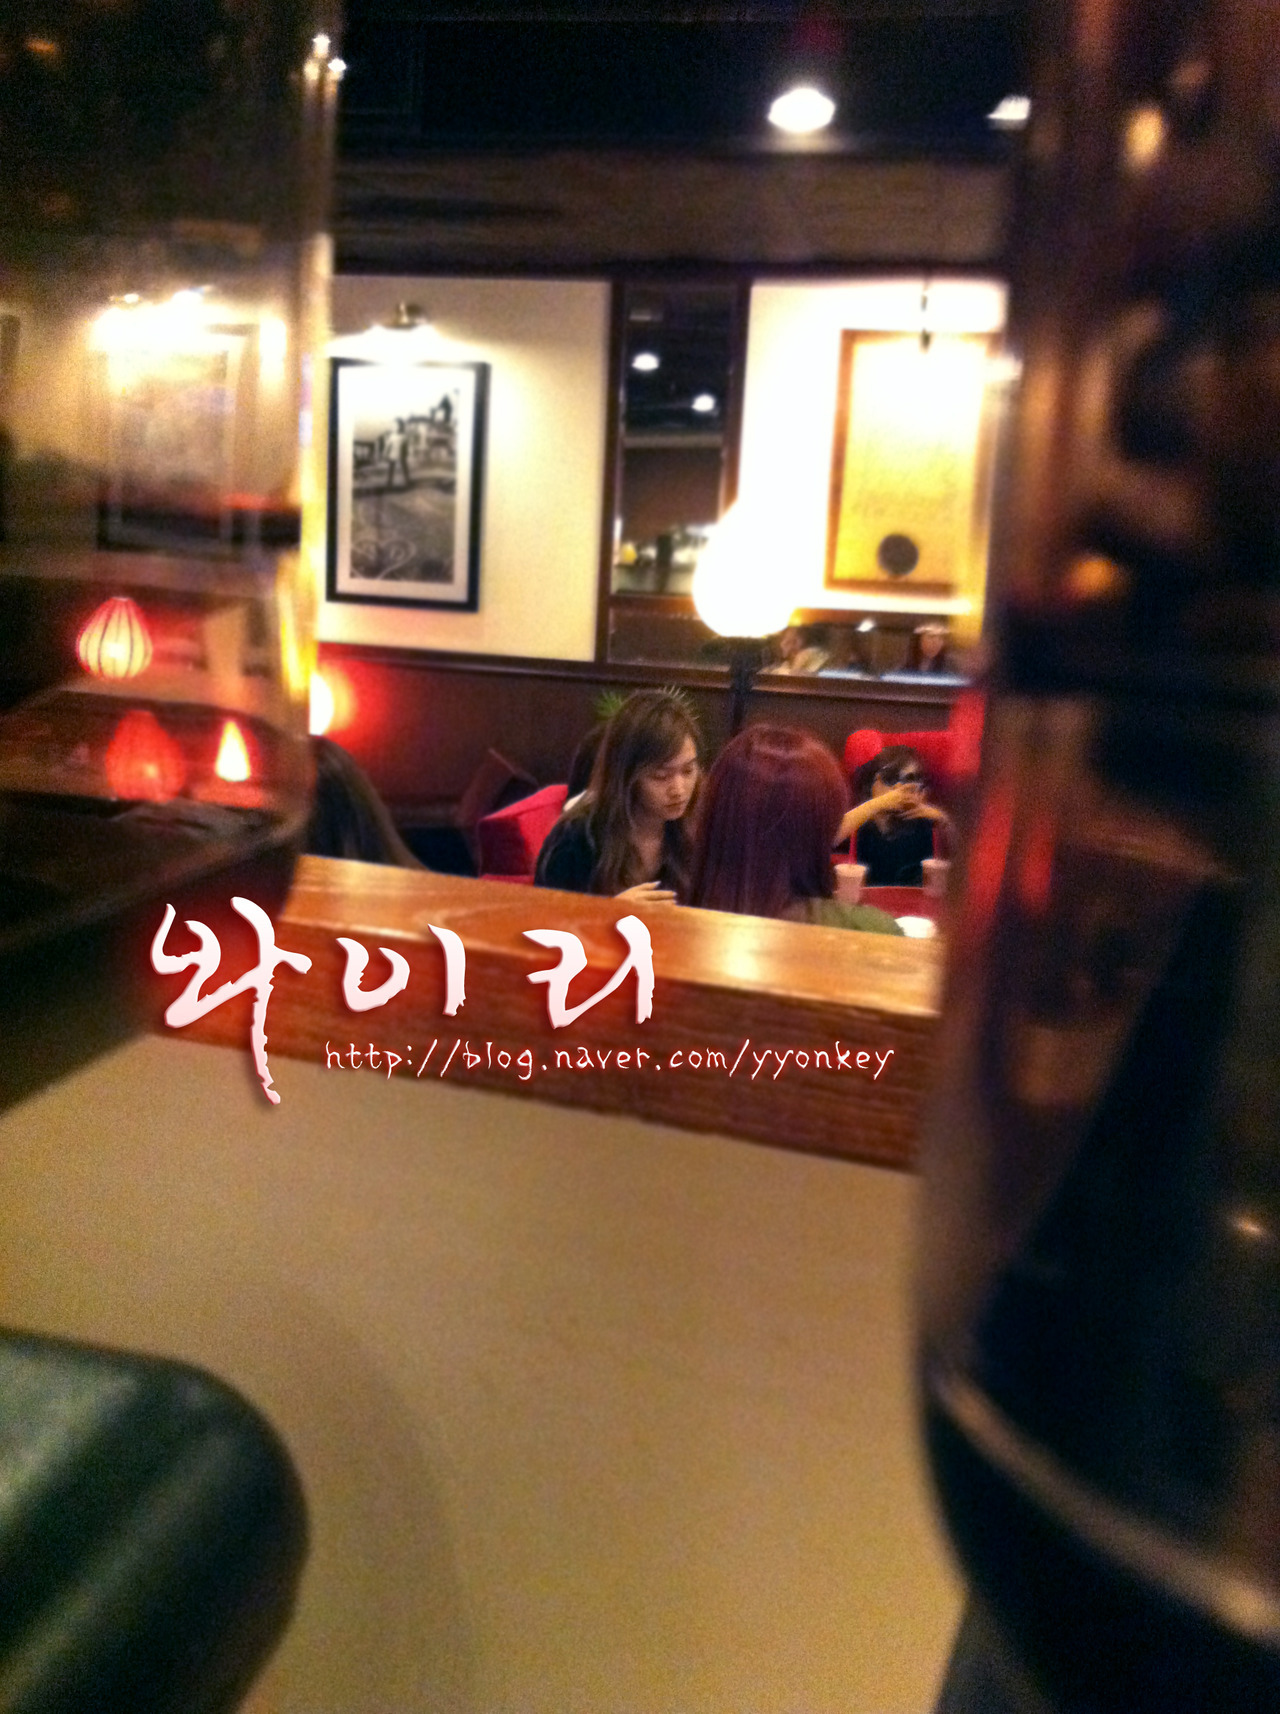 (صور) احدى المعجبين يلتقط صور لSNSD وهن في مقهى في مطار هونغ كونغ ..!!  Tumblr_m6hpjhOQjo1qbalato1_1280